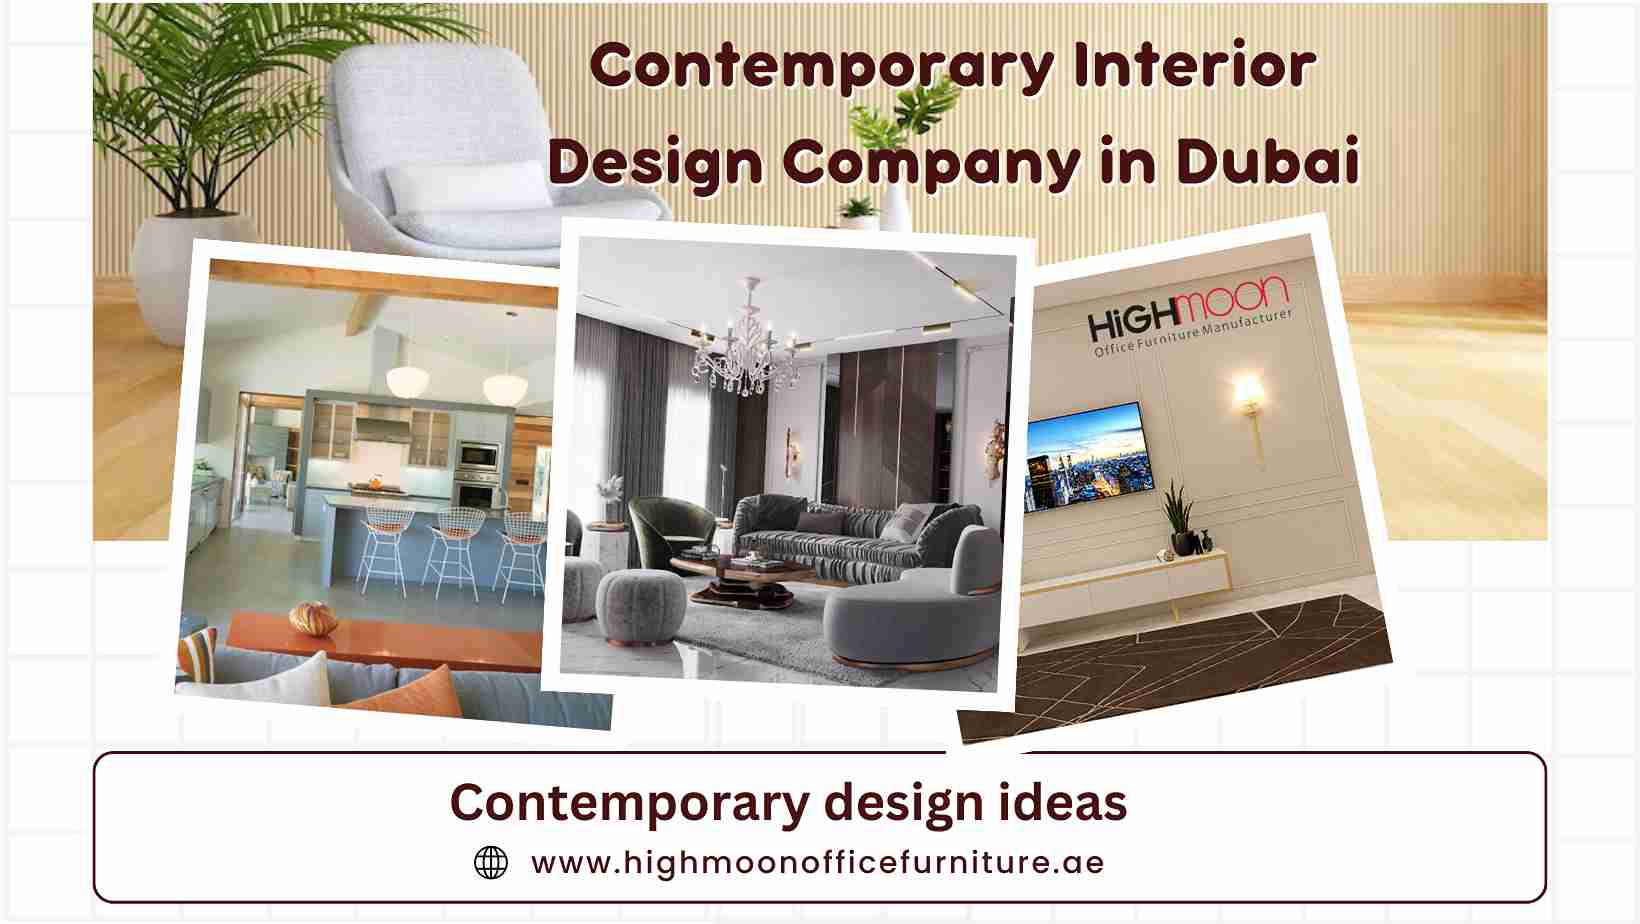 Contemporary Interior Design Company in Dubai